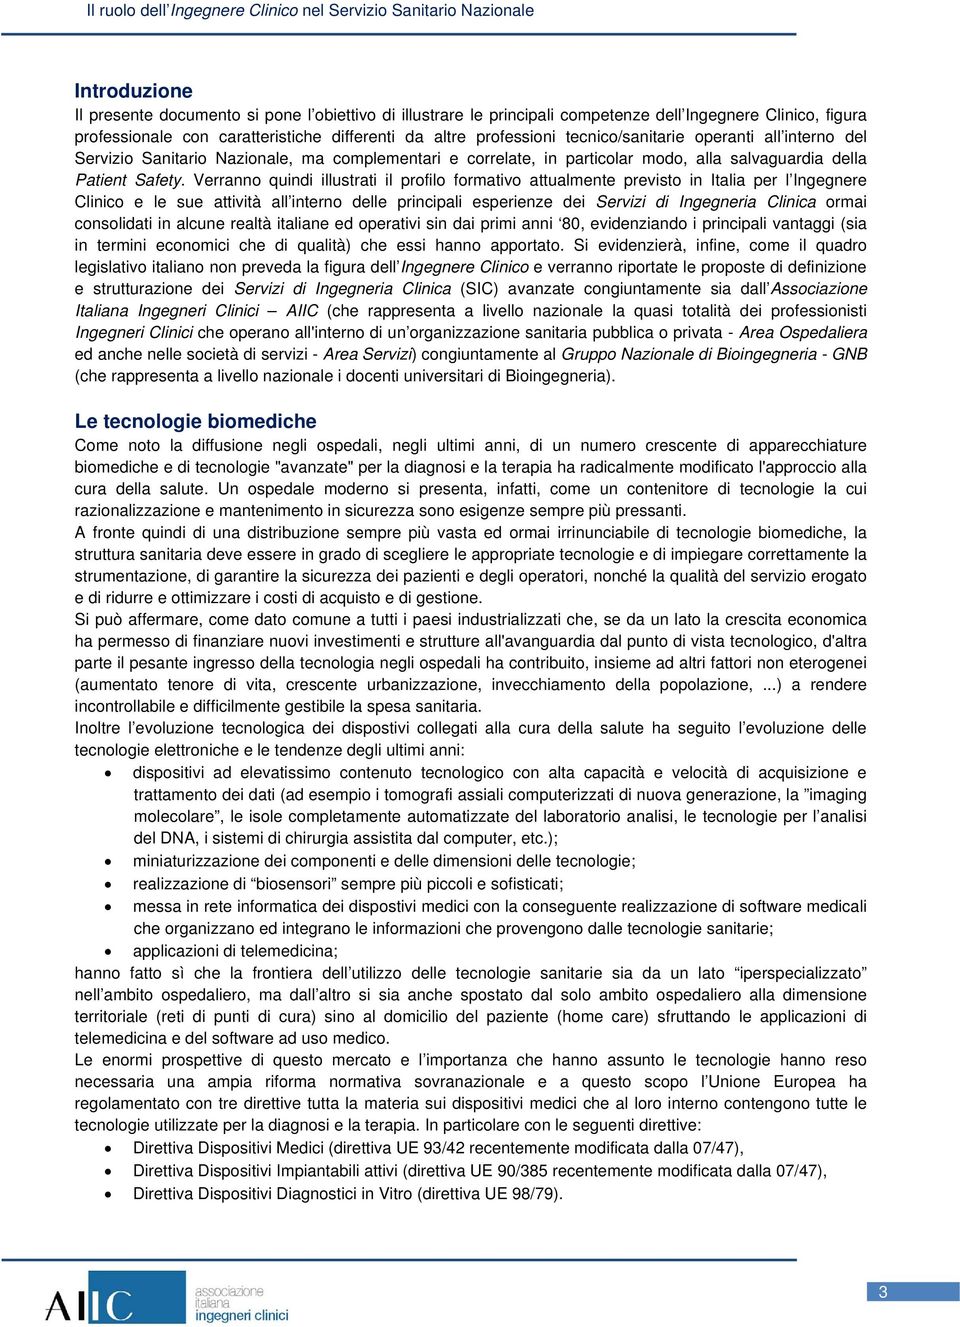 Verranno quindi illustrati il profilo formativo attualmente previsto in Italia per l Ingegnere Clinico e le sue attività all interno delle principali esperienze dei Servizi di Ingegneria Clinica